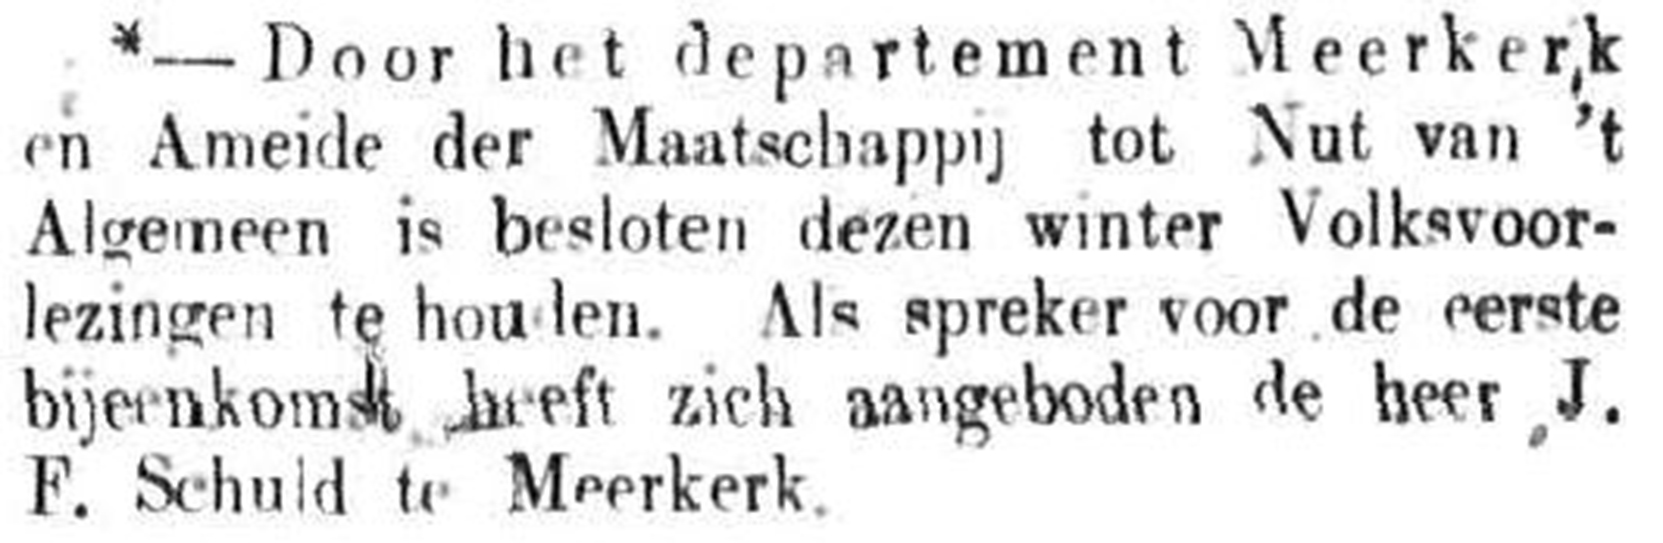 Schoonhovensche Courant 00120 1871-10-15 artikel 1